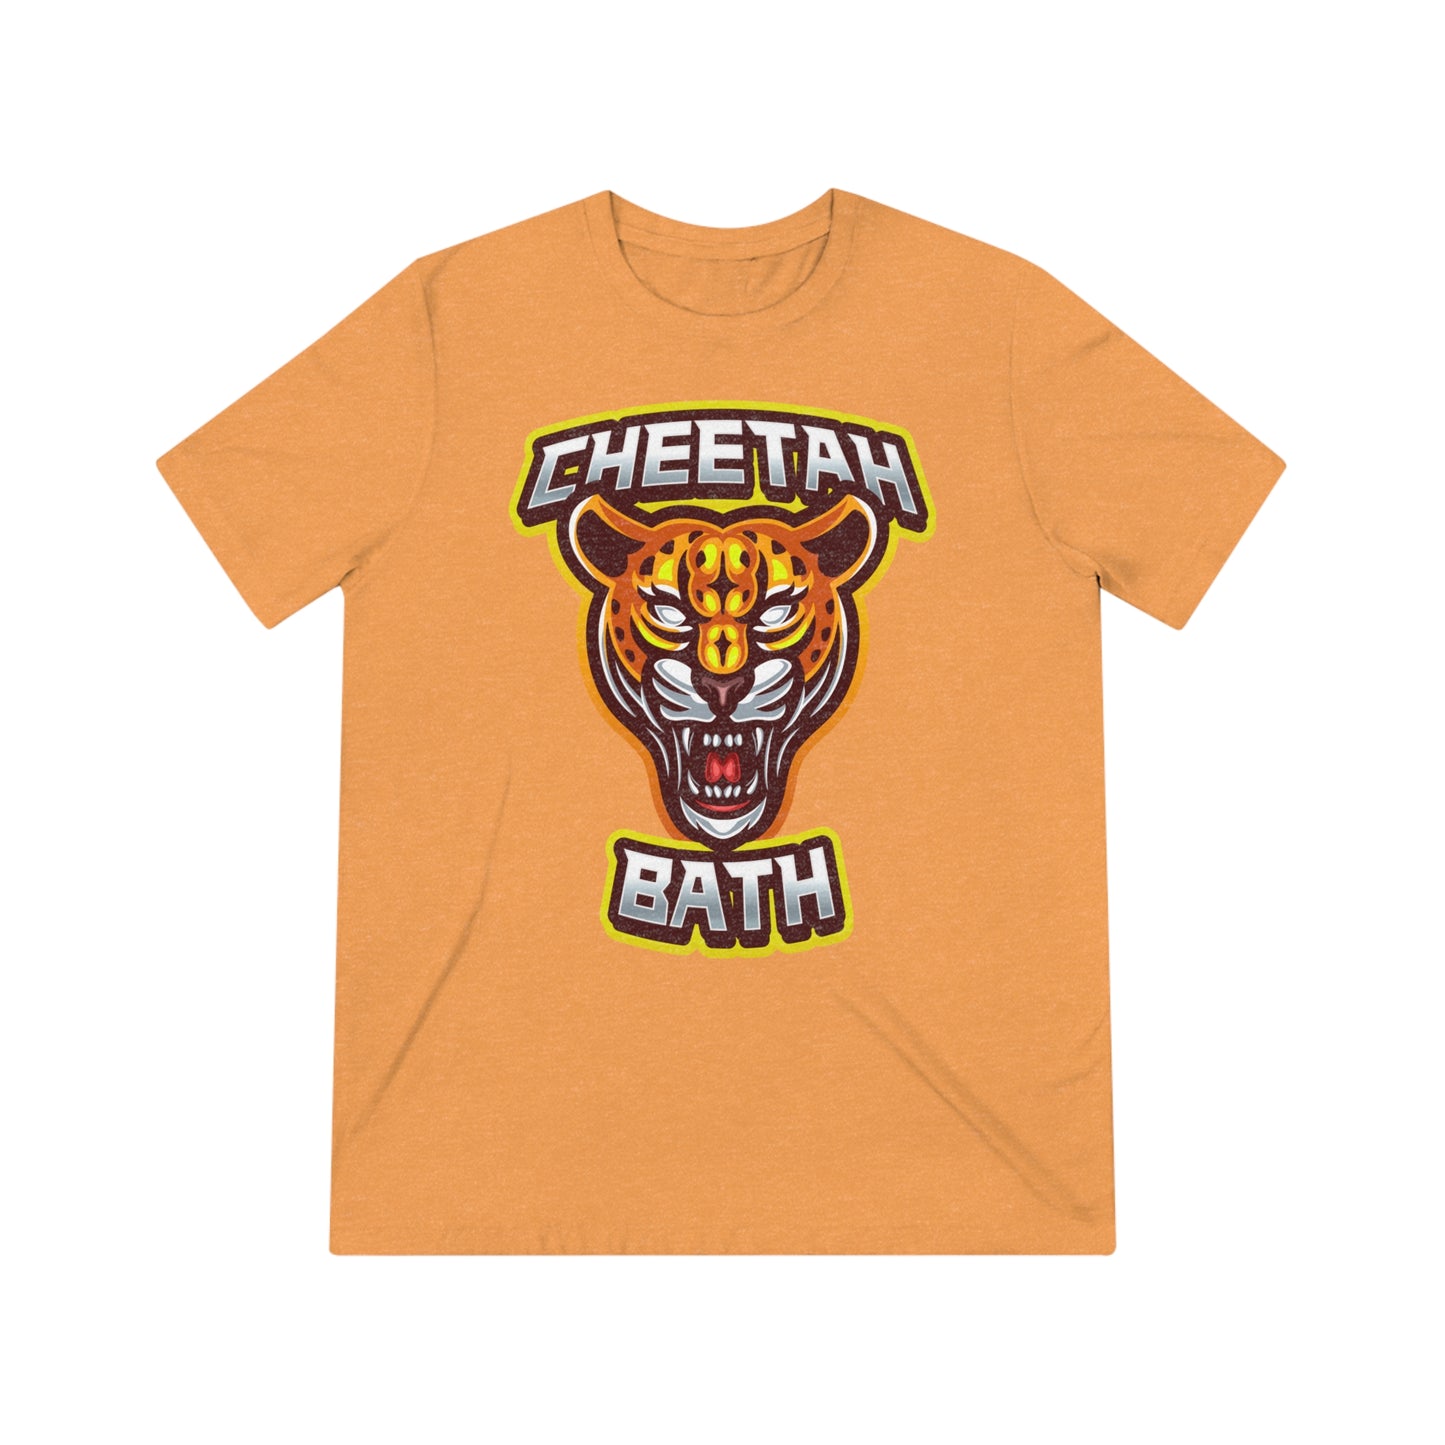 Cheetah Bath - T-Shirt